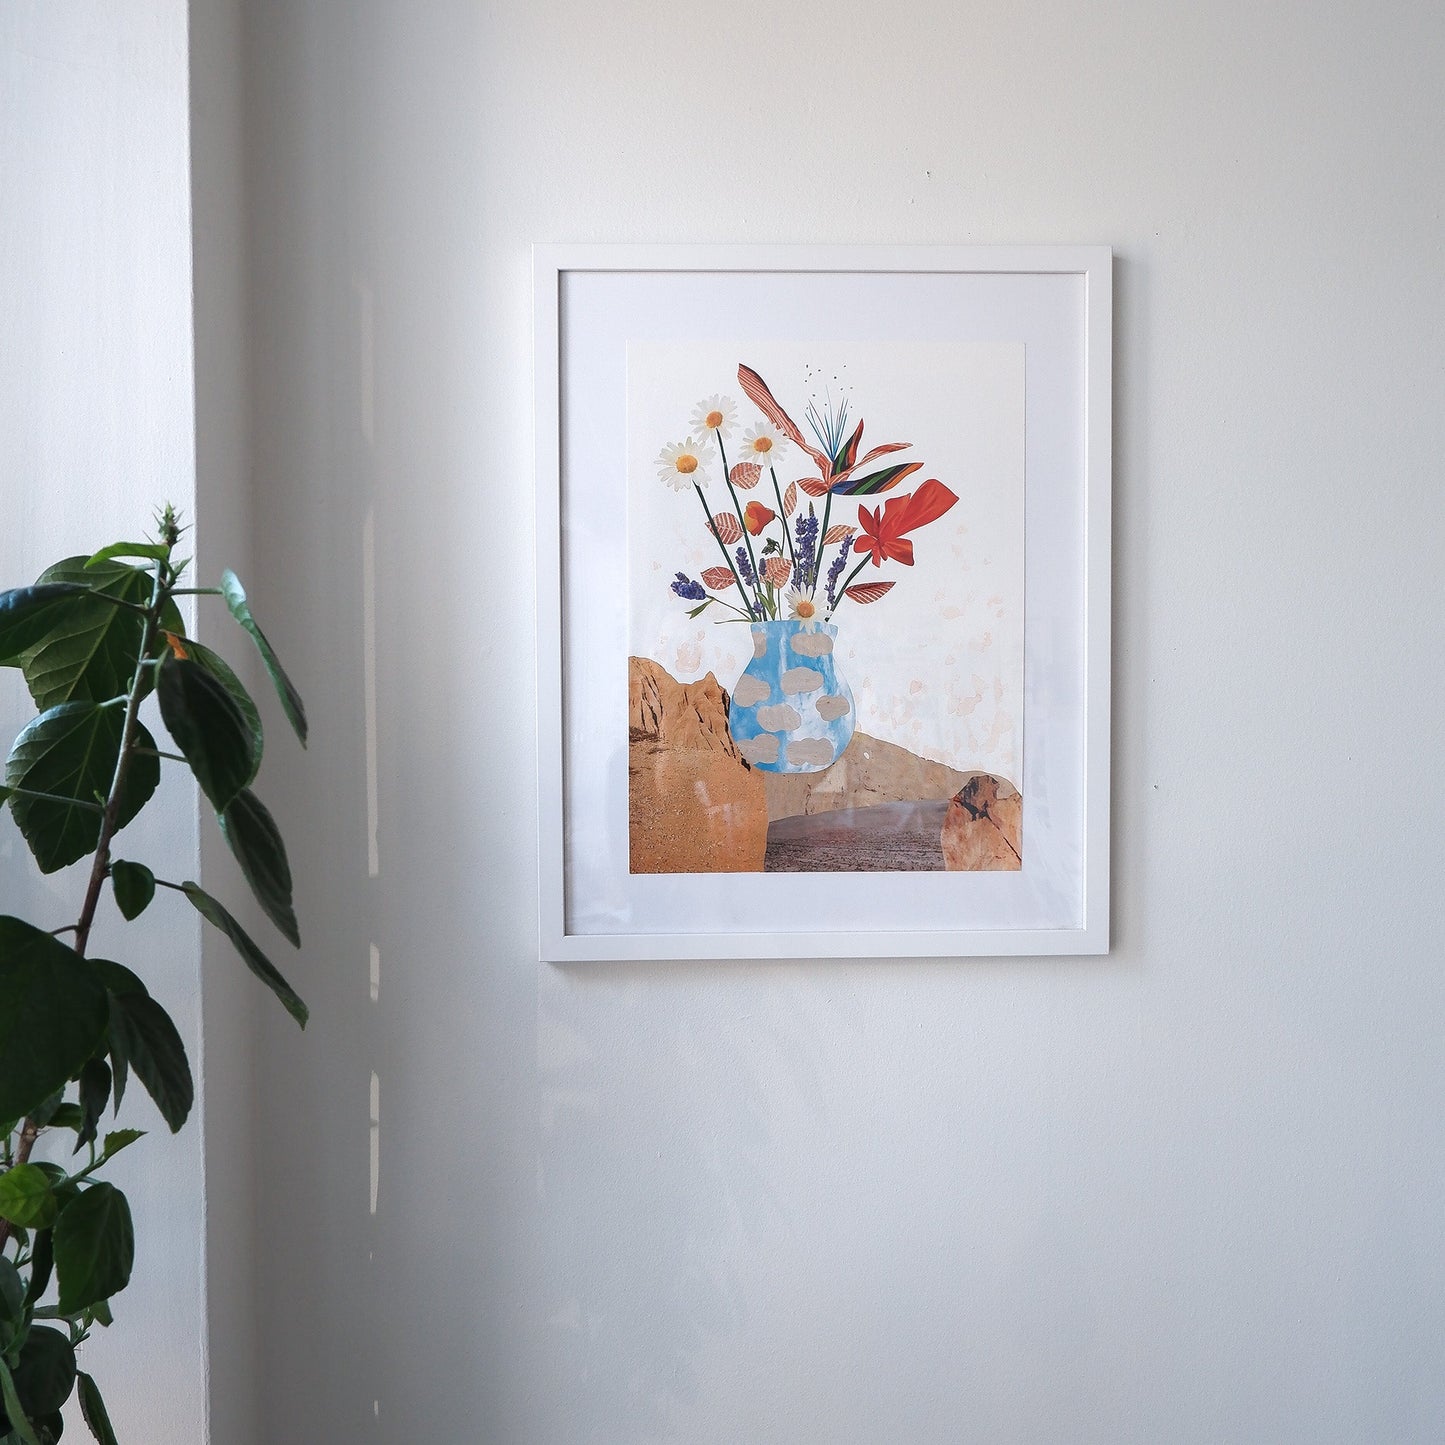 framed art print of everlasting summer collage by artist Marissa Schiesser